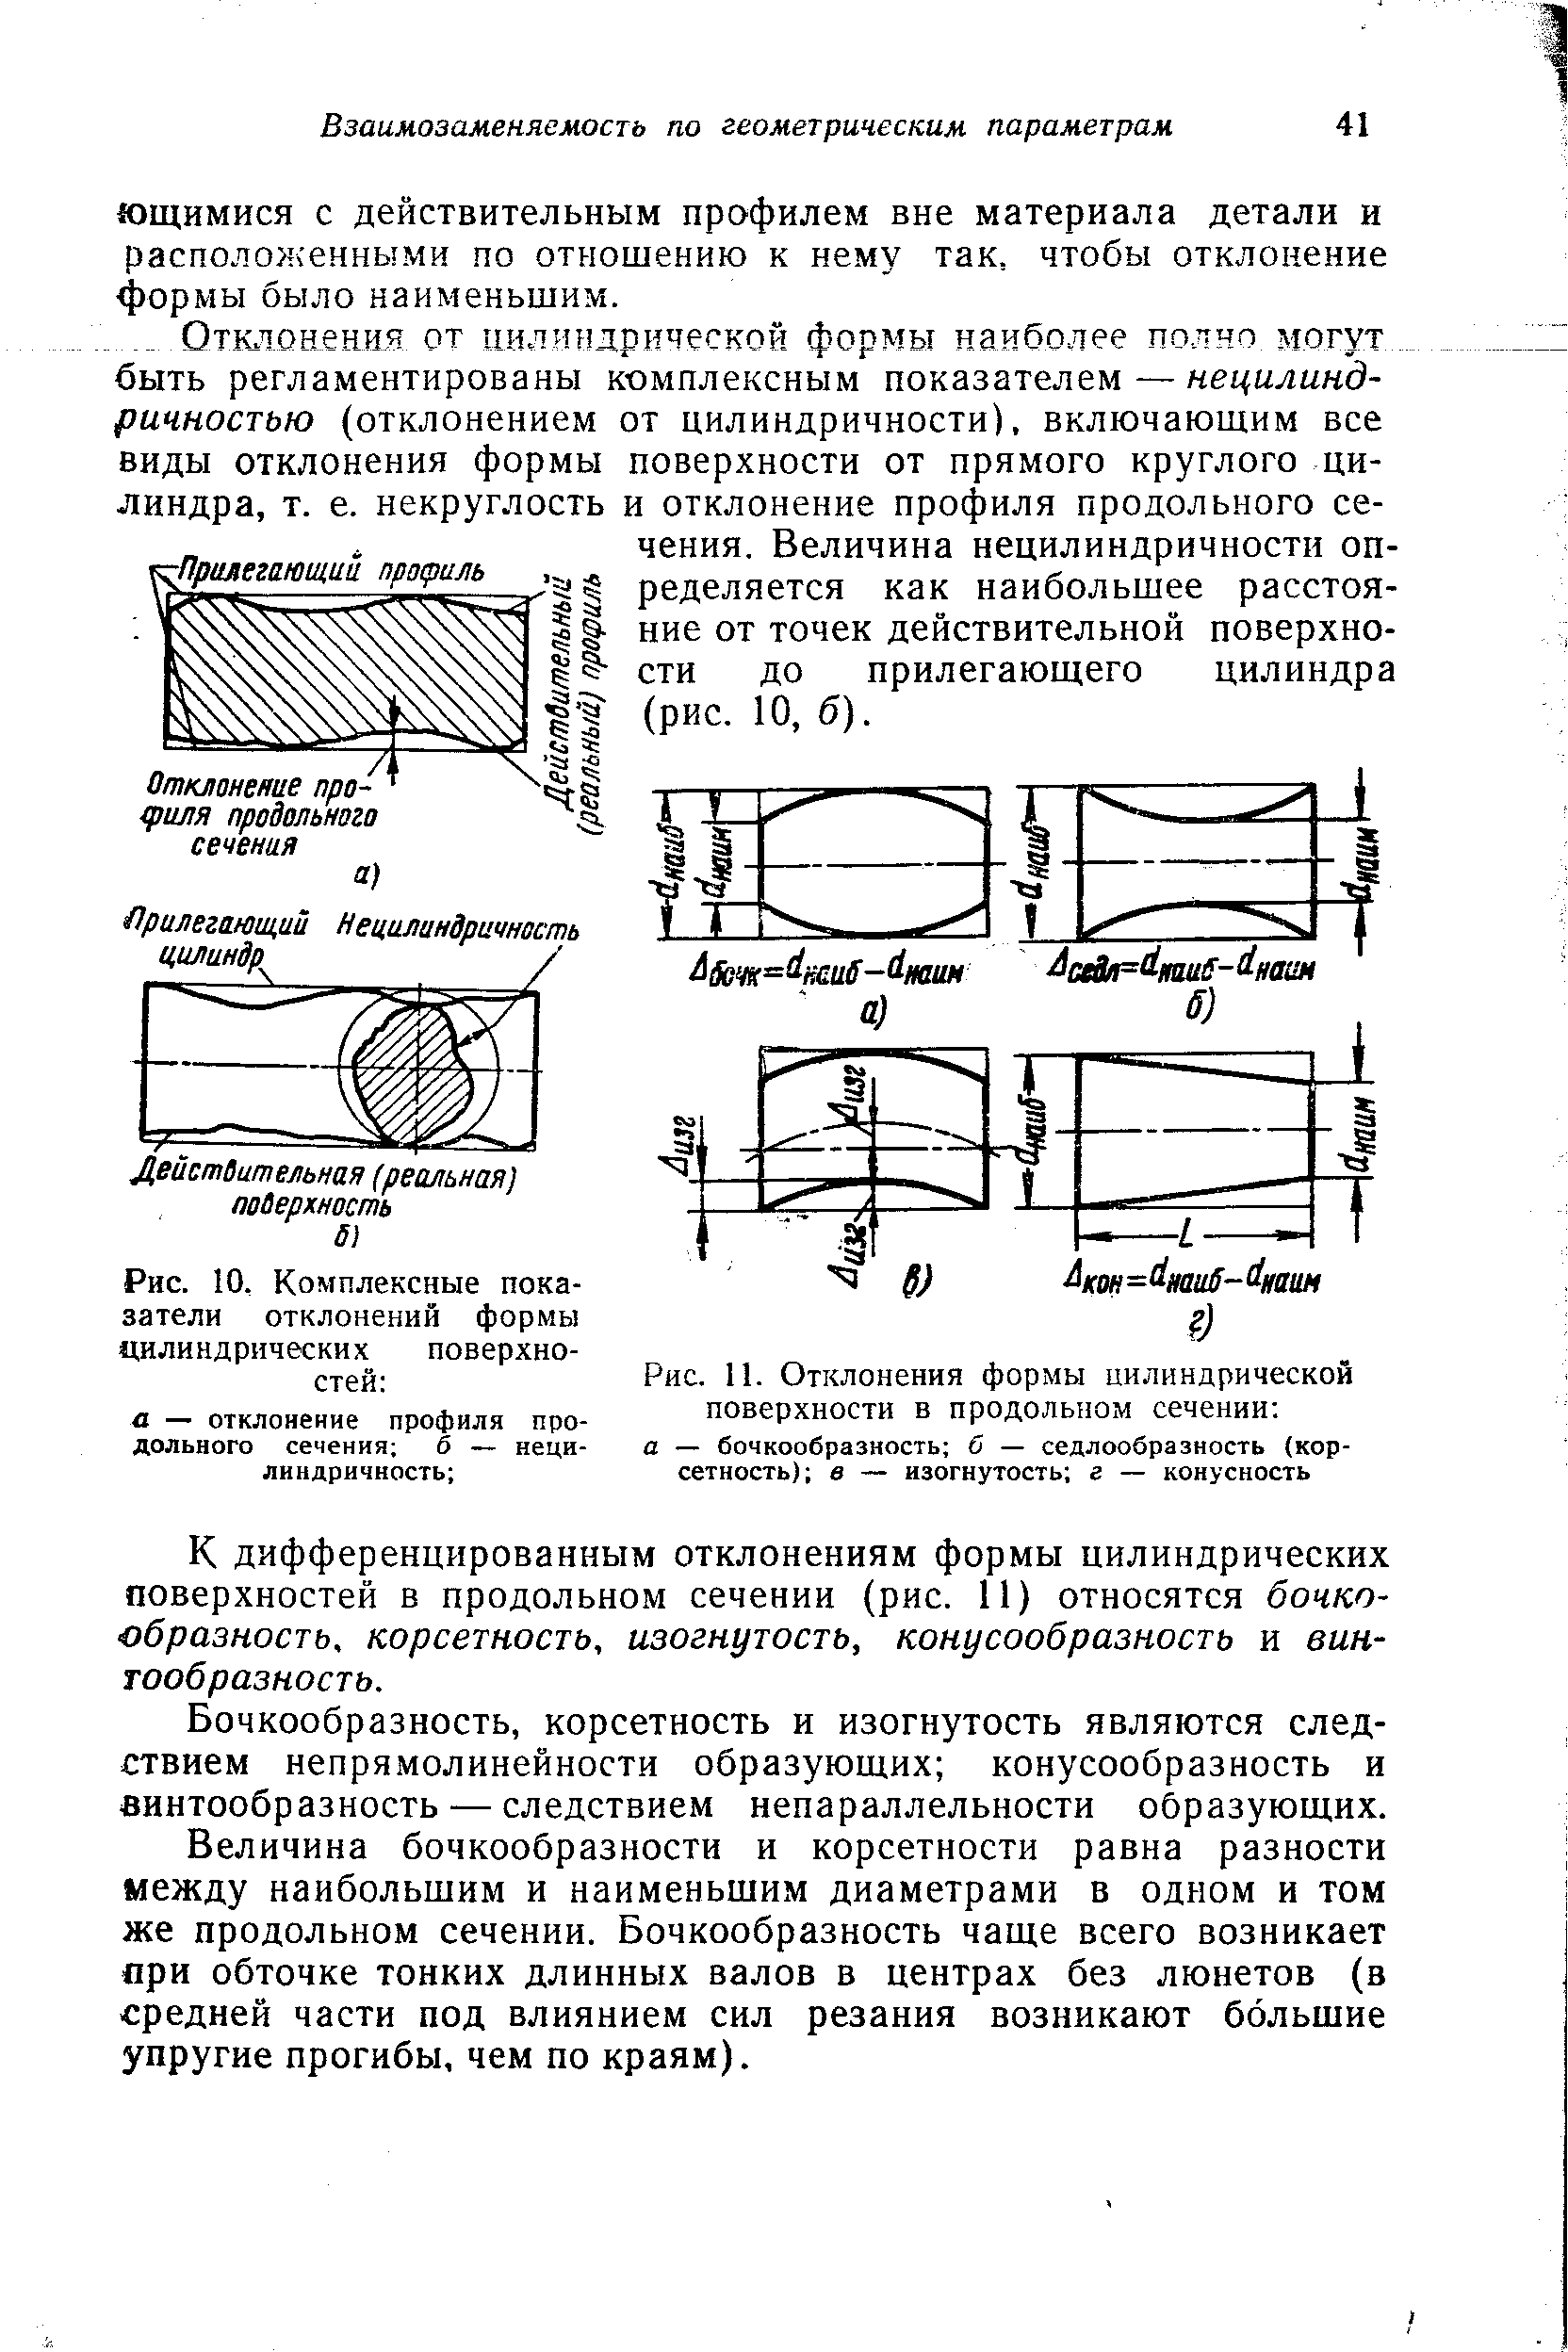 Рис. 10, Комплексные показатели отклонений формы цилиндрических поверхностей 
